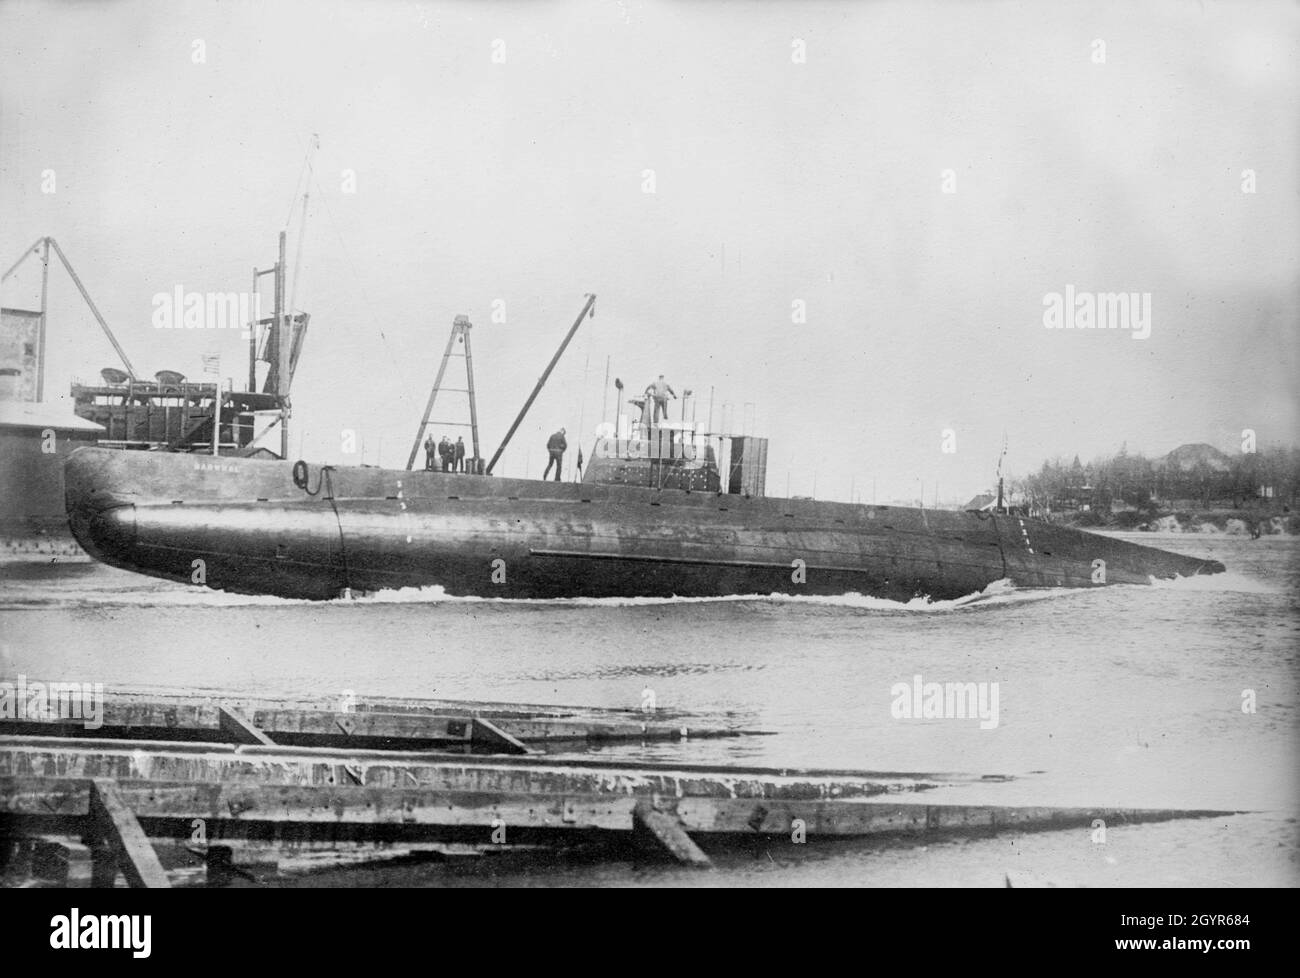 Une photo vintage 1909 du sous-marin américain USS D-1 (à l'origine SS-17) Narwhal lancé le 8 avril 1909 le navire de tête des sous-marins de classe D de la marine des États-Unis.Sa quille a été posée par la société Fore River Shipbuilding Company à Quincy, Massachusetts, le 16 avril 1908 et mise hors service le 8 février 1922 Banque D'Images